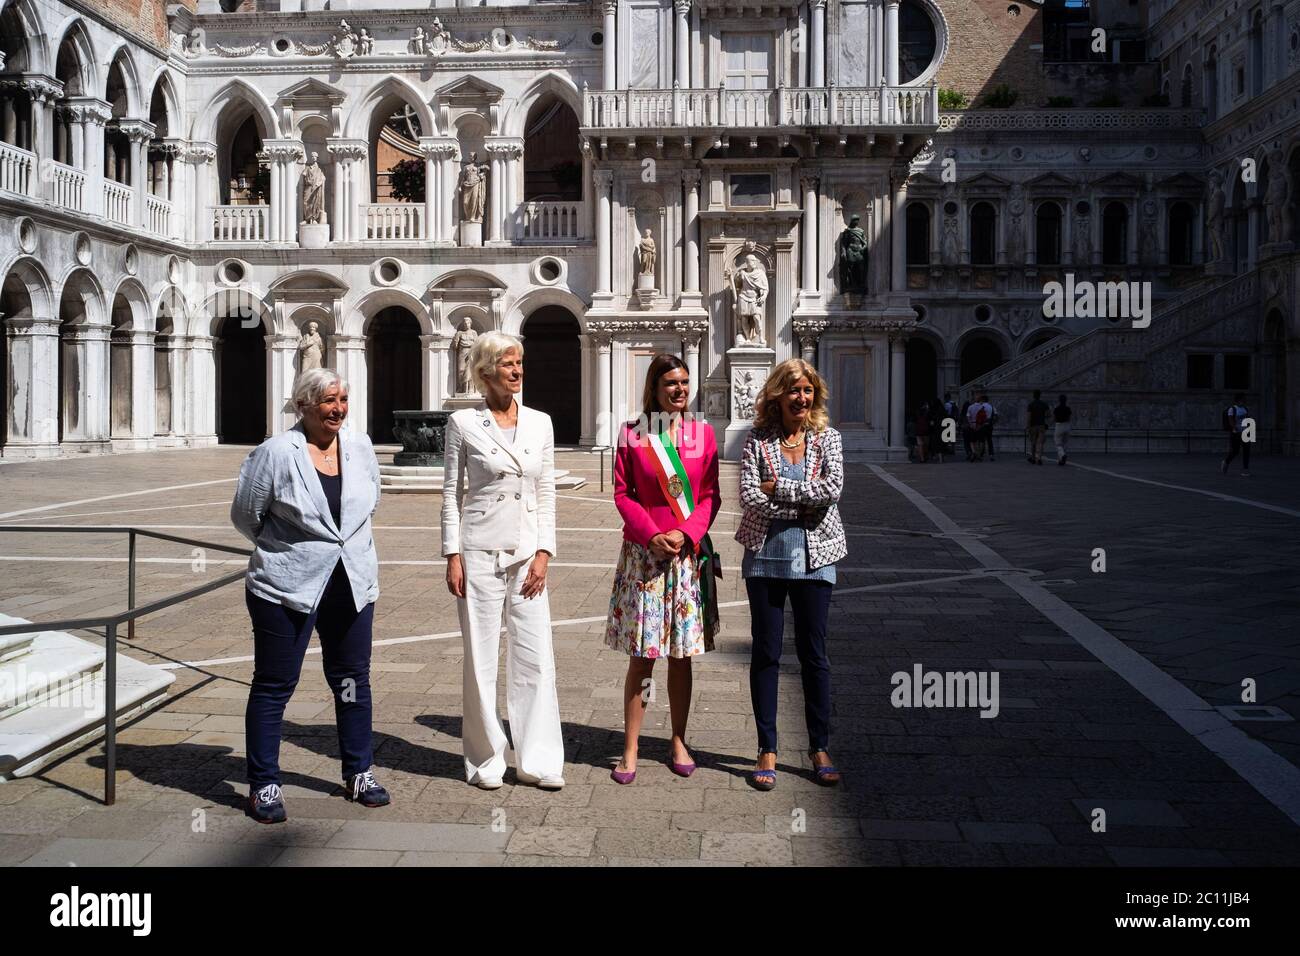 VENECIA, ITALIA - 13 DE JUNIO de 2020: Los turistas visitan el Museo del Palacio Ducal el día de la reapertura después de más de 3 meses de cierre debido a la clausura de Covid-19 el 13 de junio de 2020 en Venecia, Italia. Crédito: Despertando/Alamy Live News Foto de stock